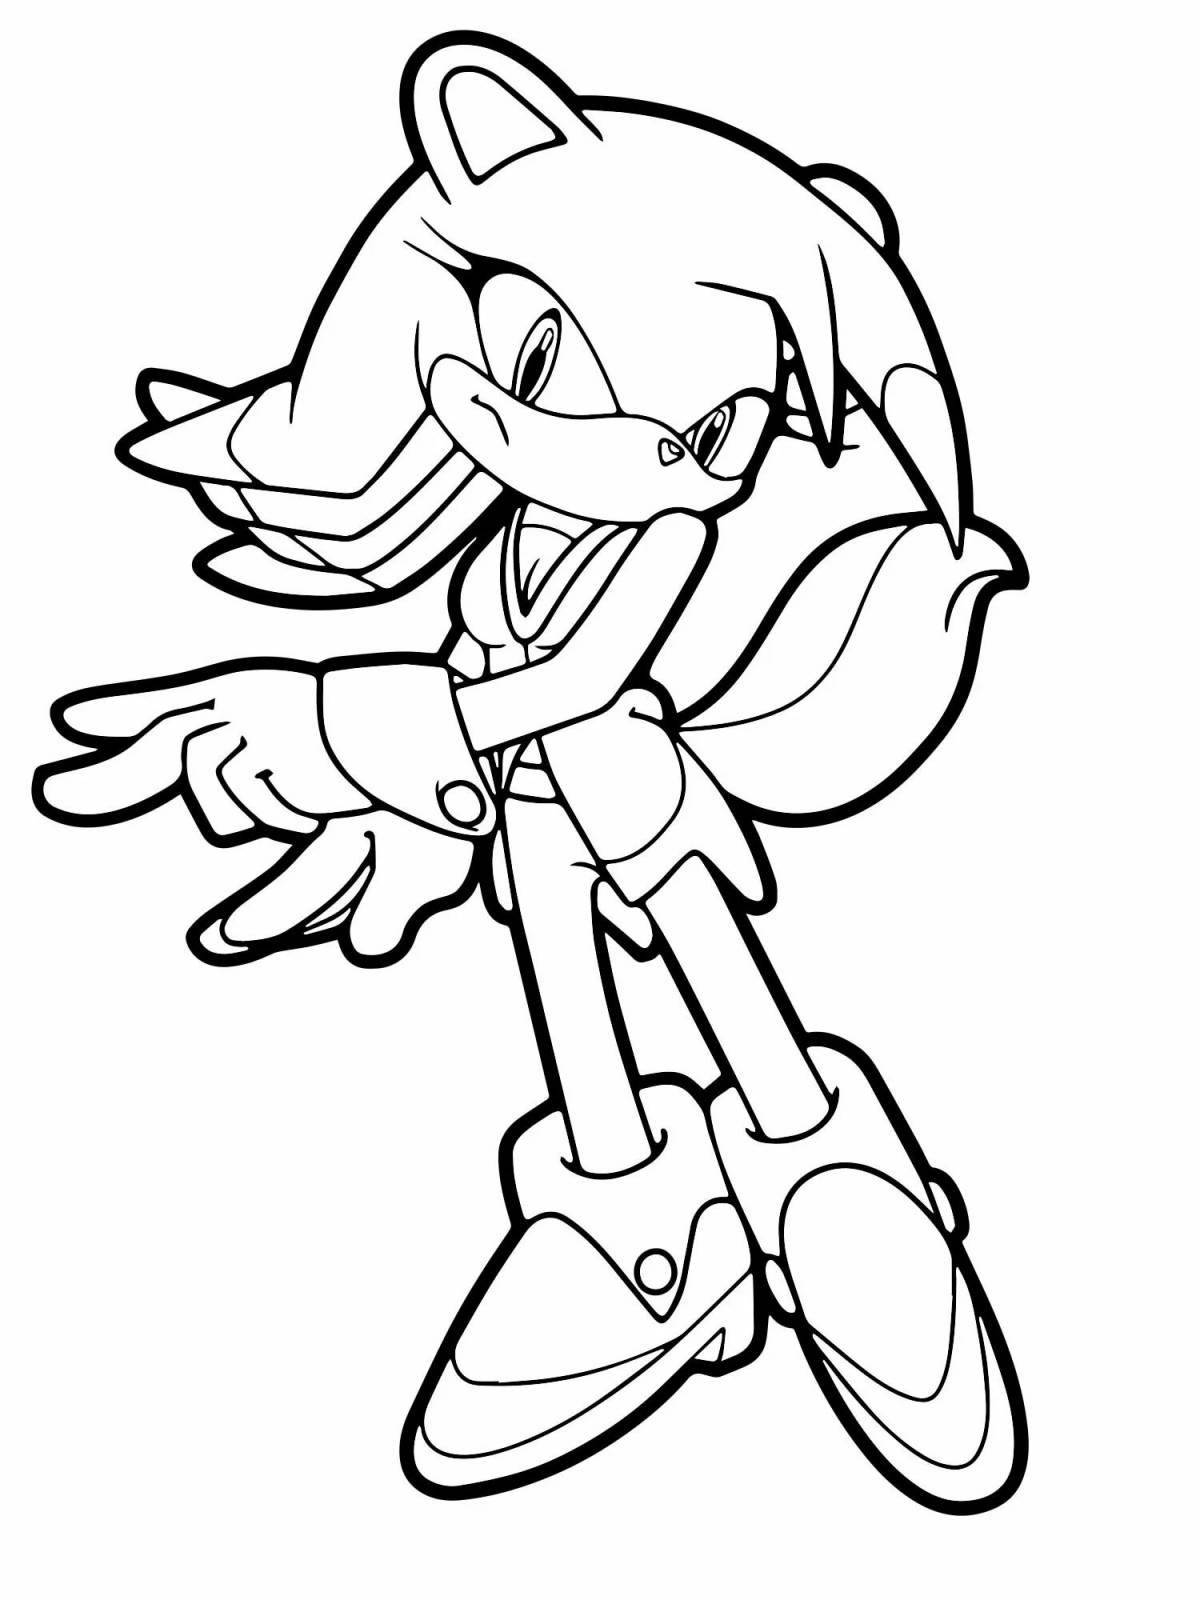 Sonic 3 fun coloring